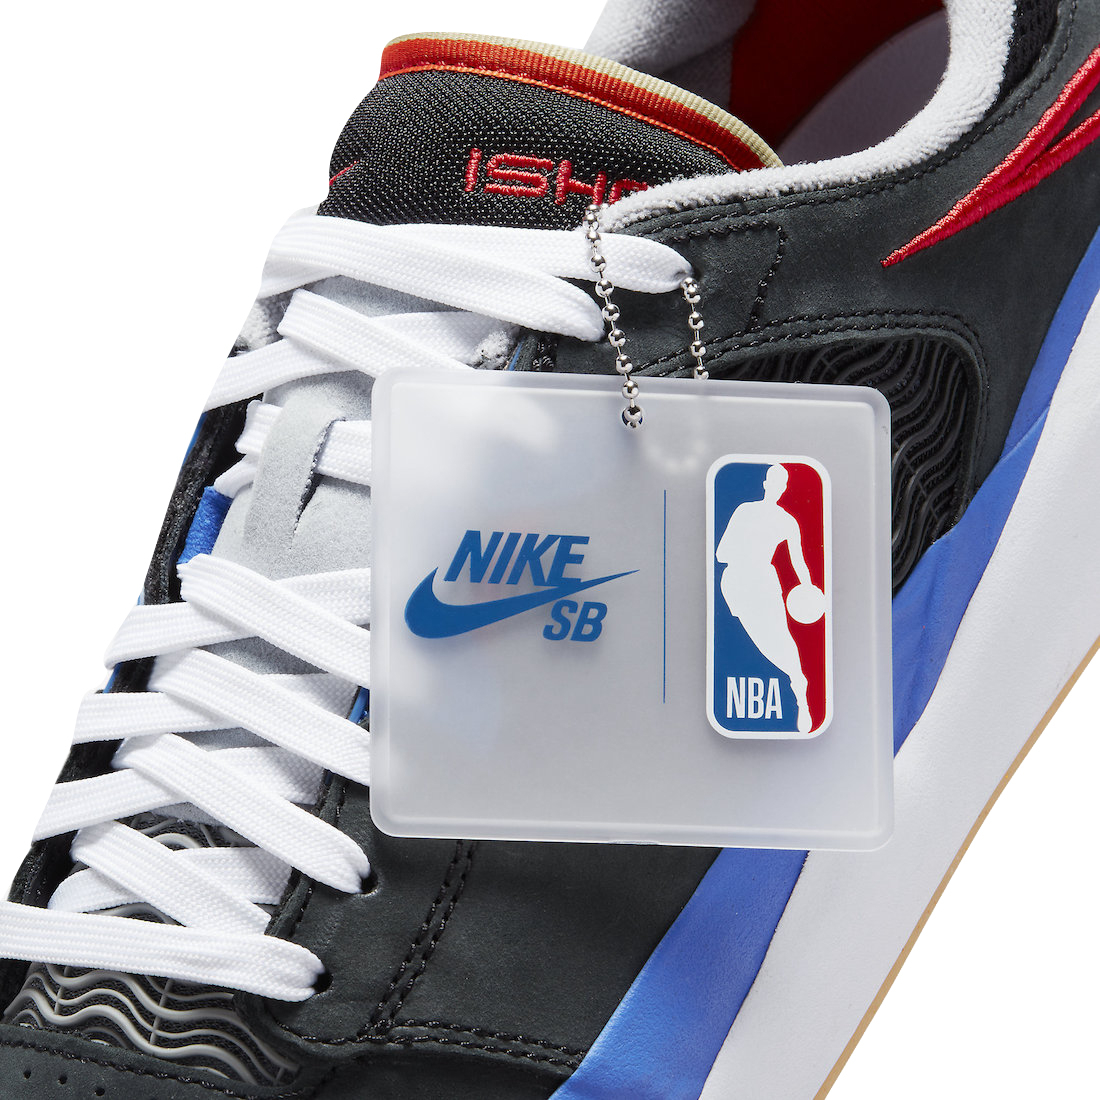 NBA x Nike SB Ishod DM0752-002